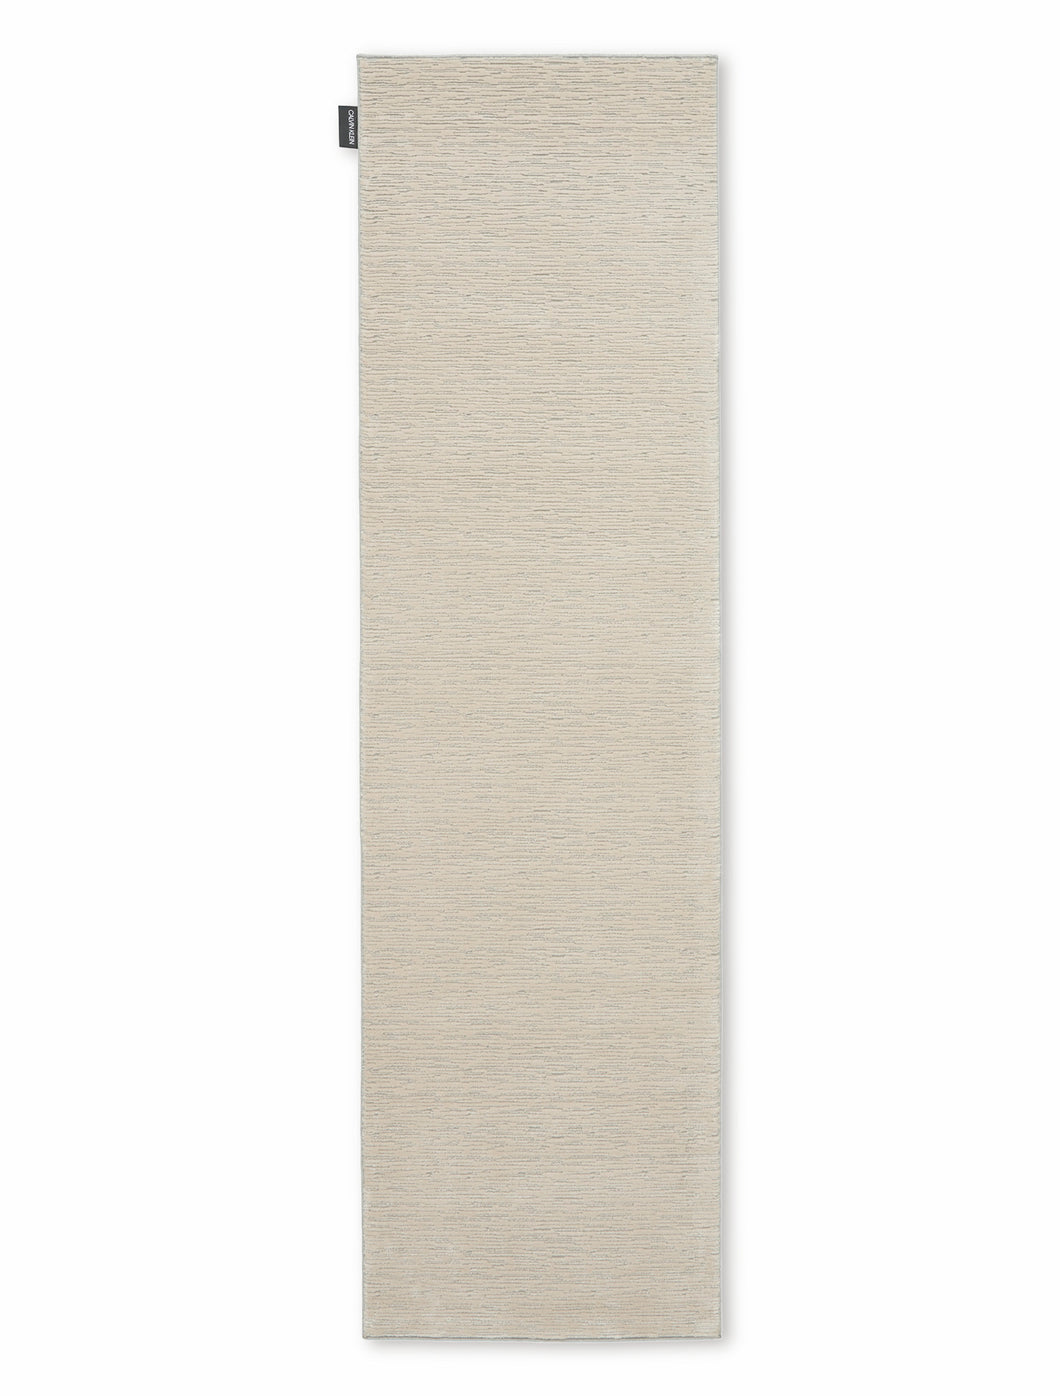 Calvin Klein Jackson CK781 Ivory 8' Runner Striated Hallway Rug CK781 Ivory/Grey